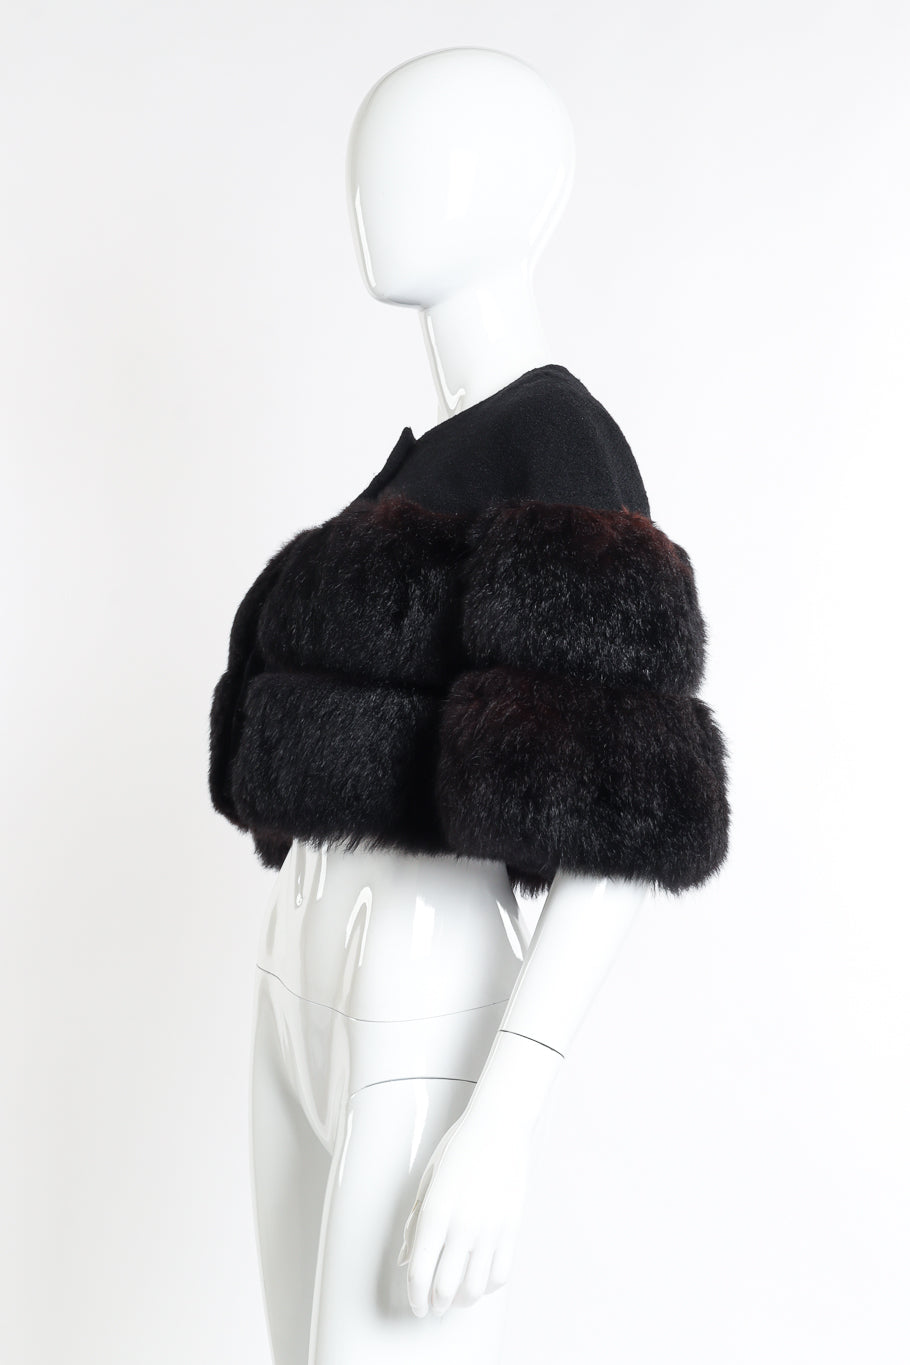 Vintage Pauline Trigere Cropped Fur Jacket side on mannequin @recessla